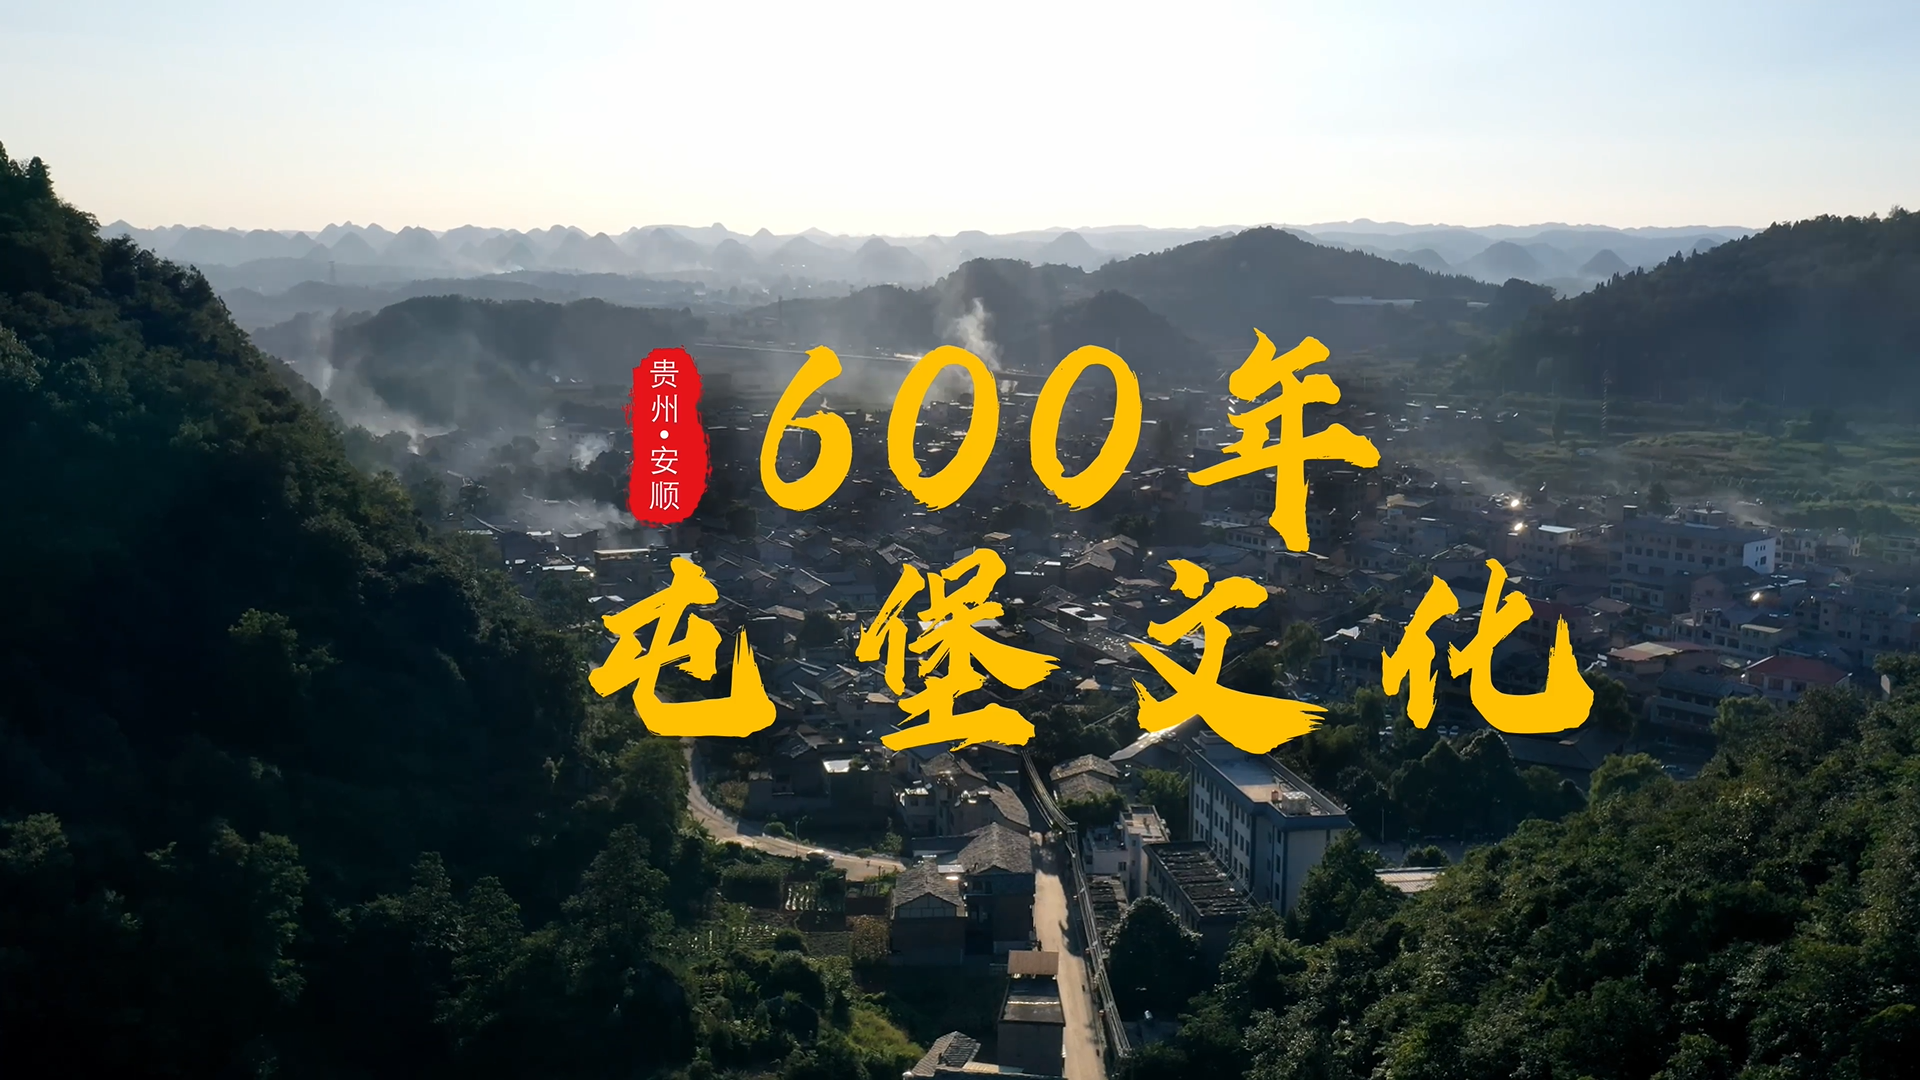 《天龙屯堡》丨贵州省首届社会主义核心价值观主题微电影(微视频)征集展示活动作品